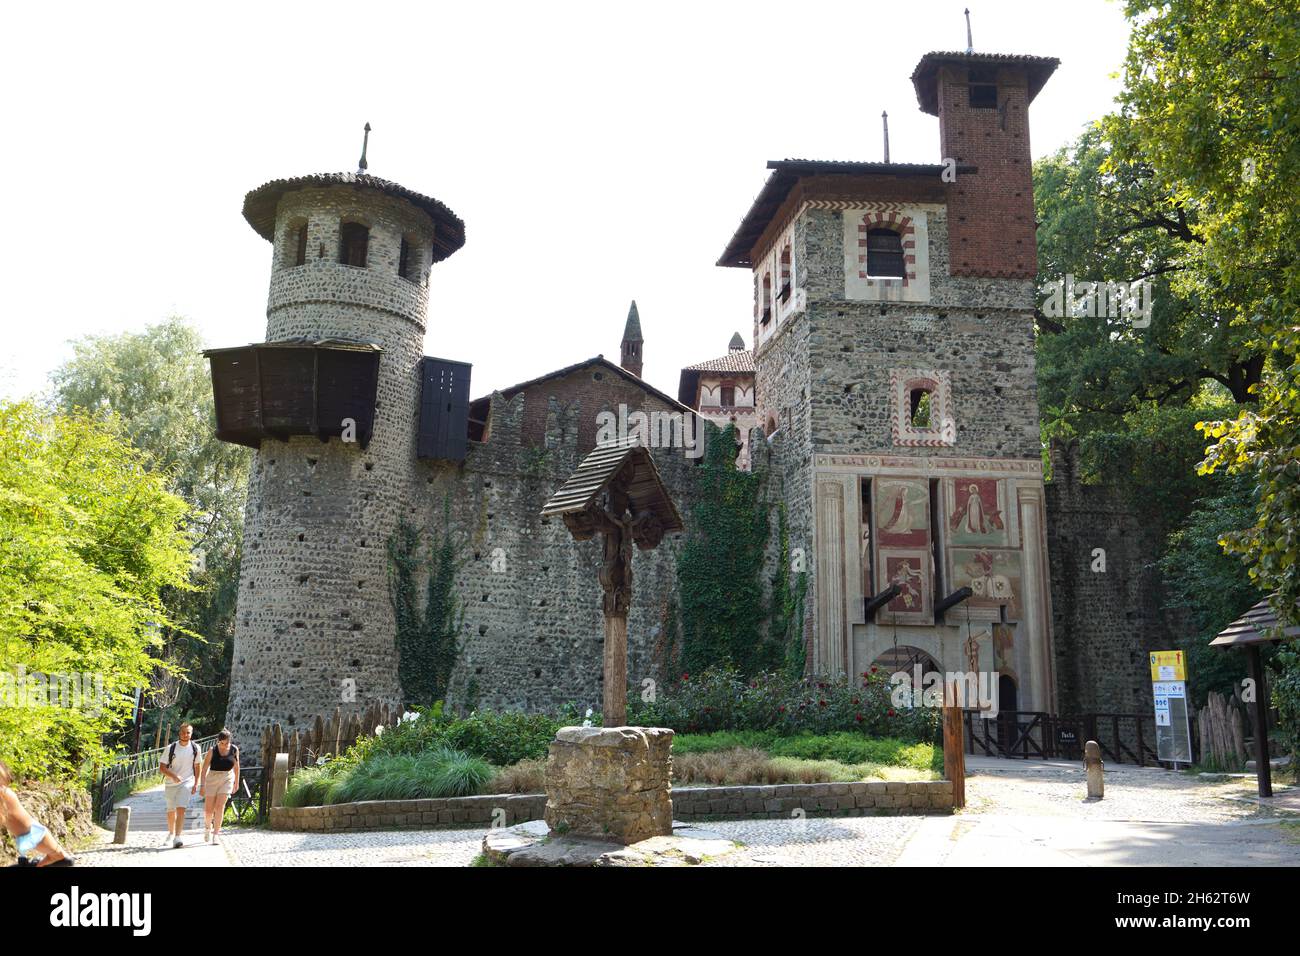 TORINO - 20 AGOSTO 2021: Borgo medievale è un borgo medievale e fortezza all'interno del Parco del Valentino di Torino Foto Stock